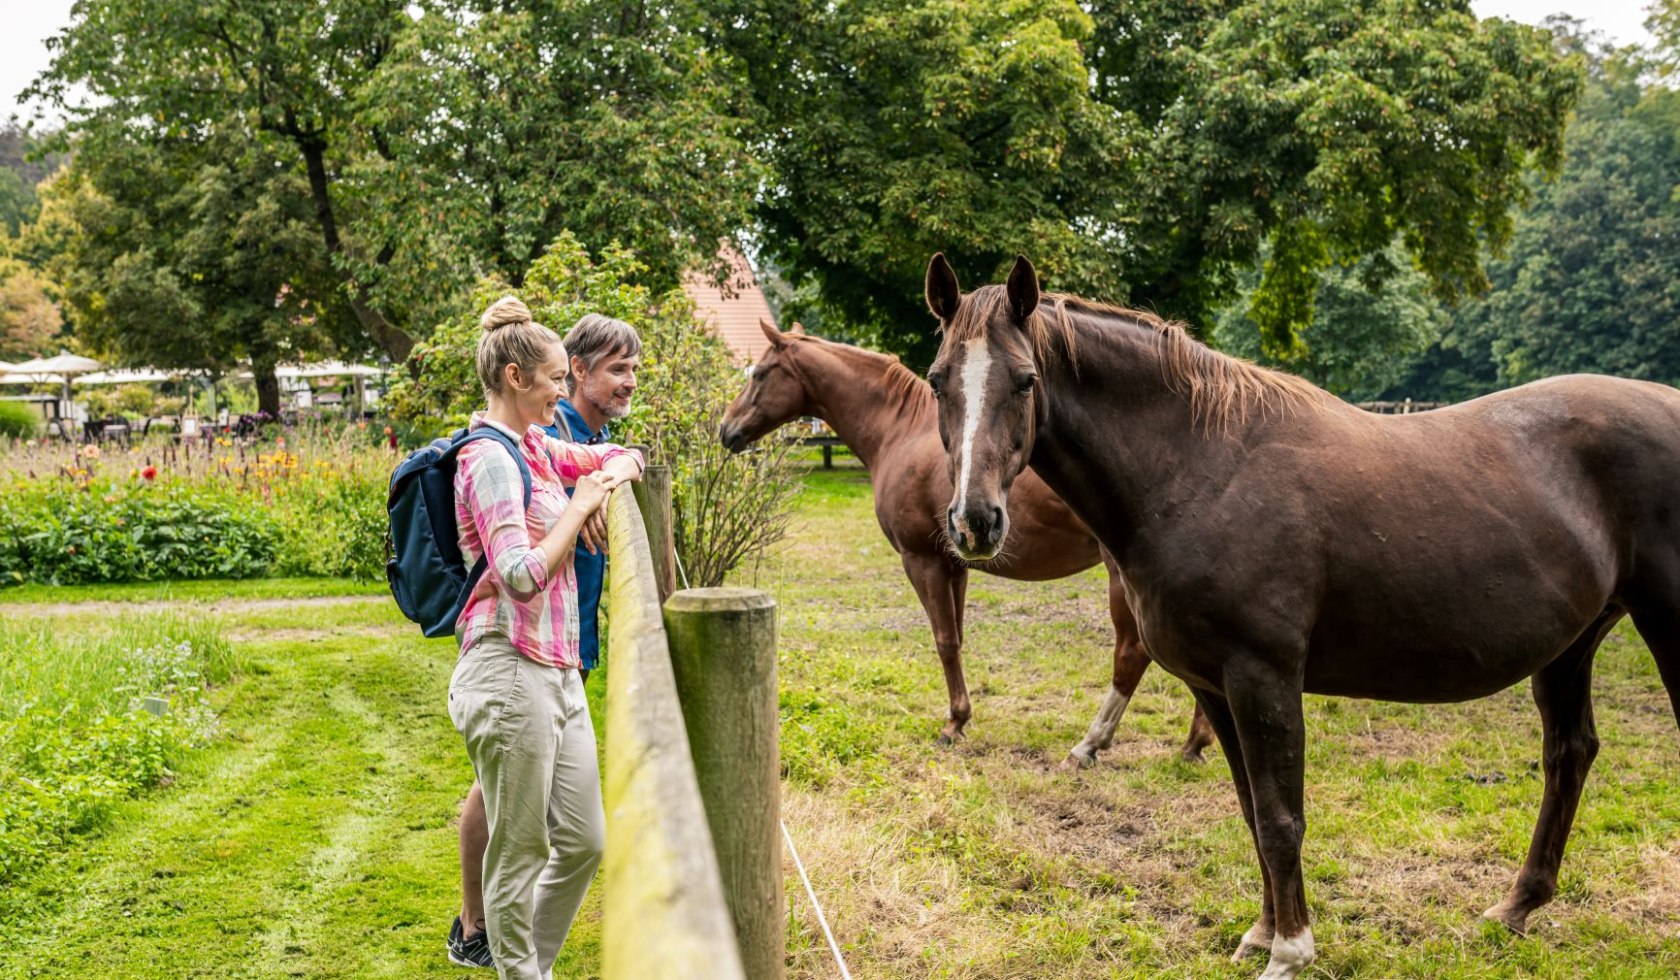 Begegnung mit Pferden in der Region Mittelweser, © TourmusMarketing Niedersachsen GmbH